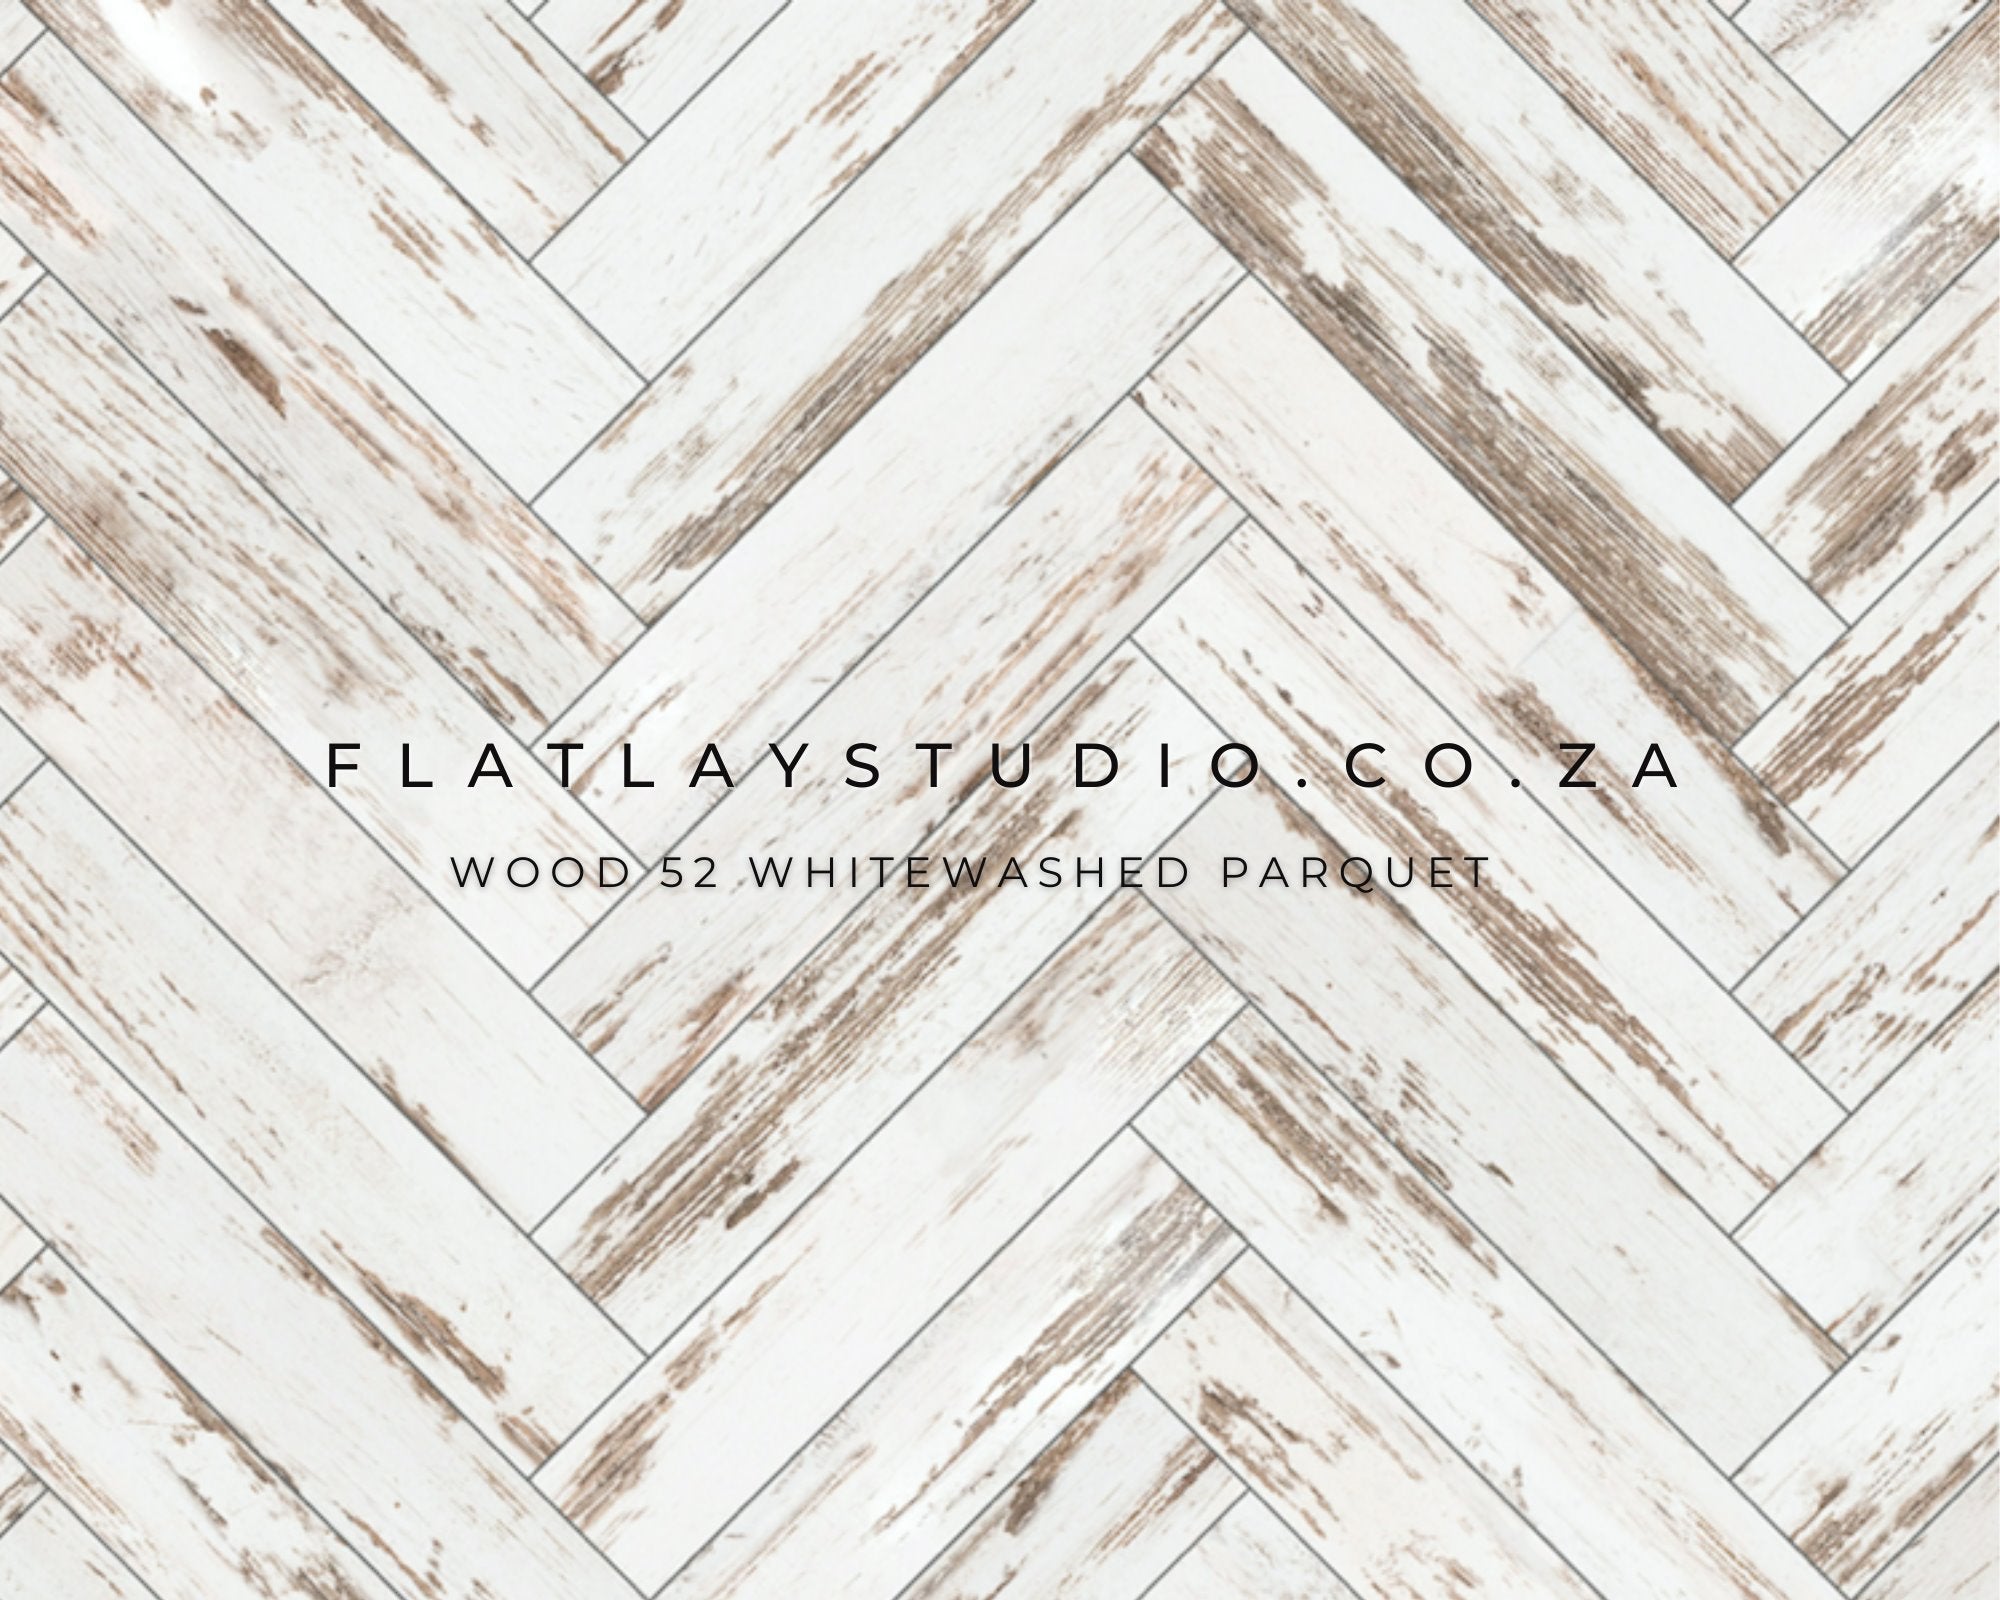 Wood 52 Whitewashed Parquet - FlatlayStudio Flatlay Styling Board